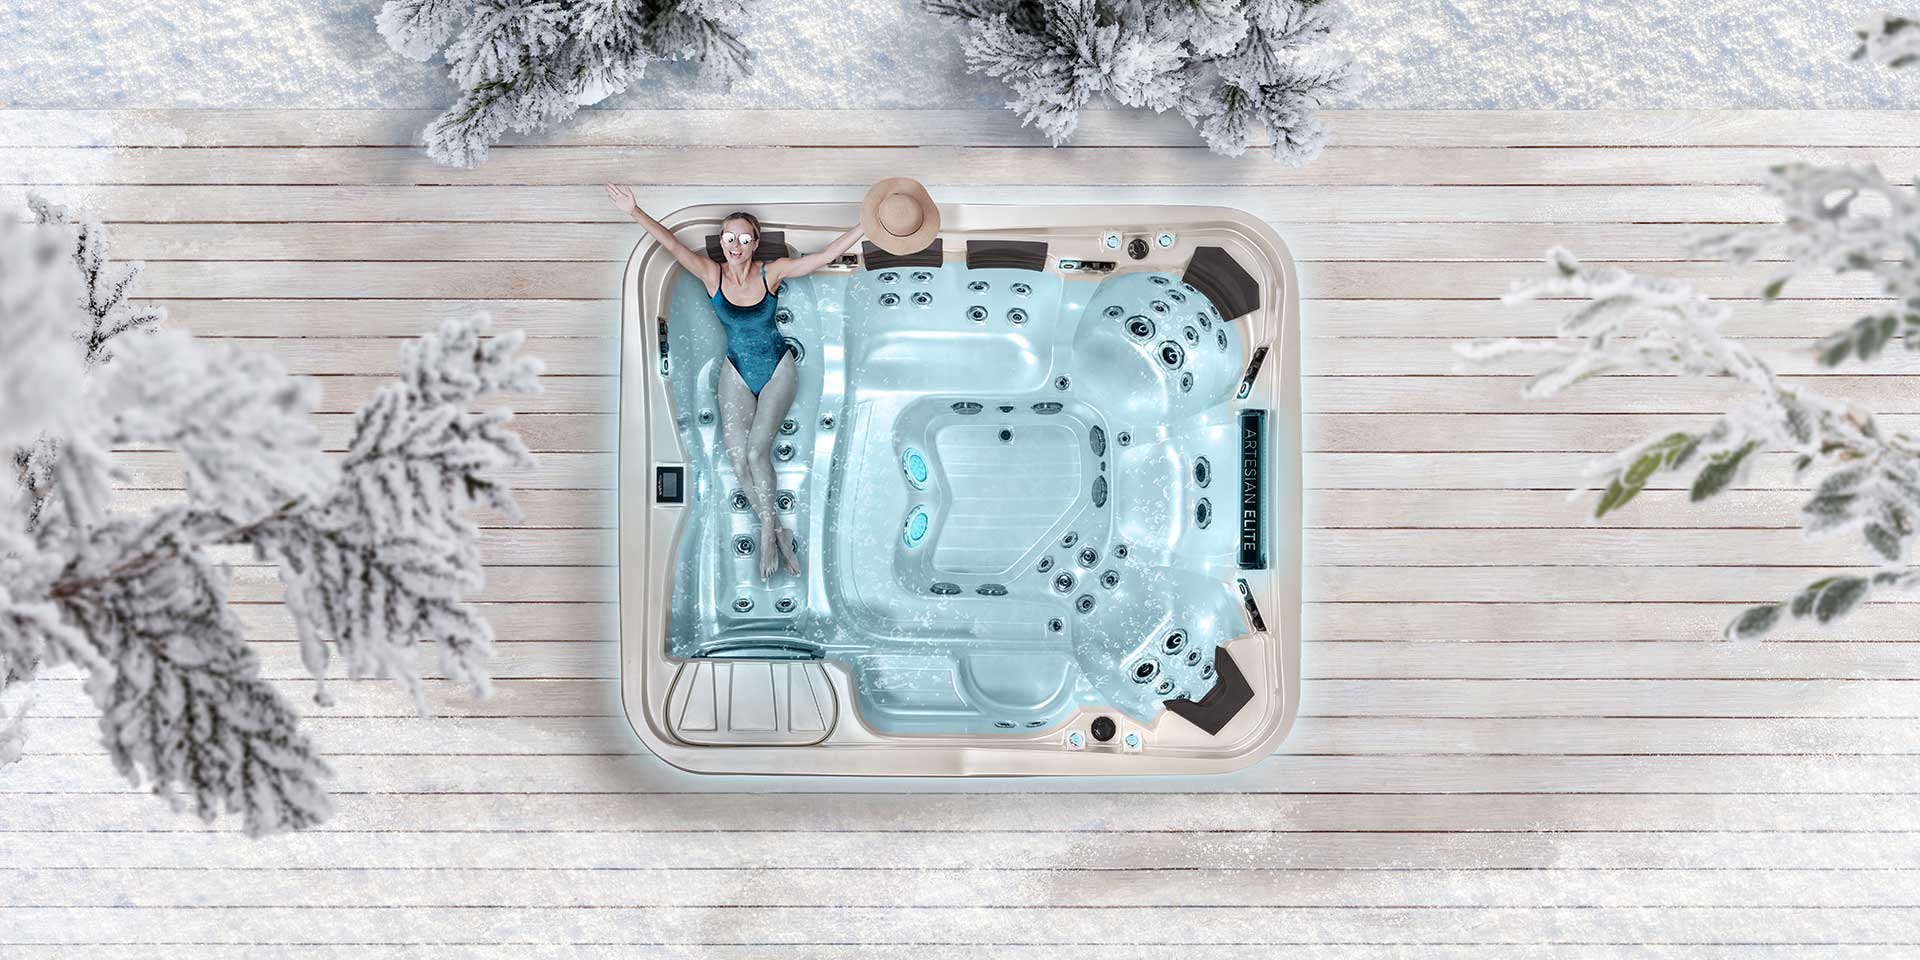 Kann man einen Whirlpool auch im Winter nutzen?